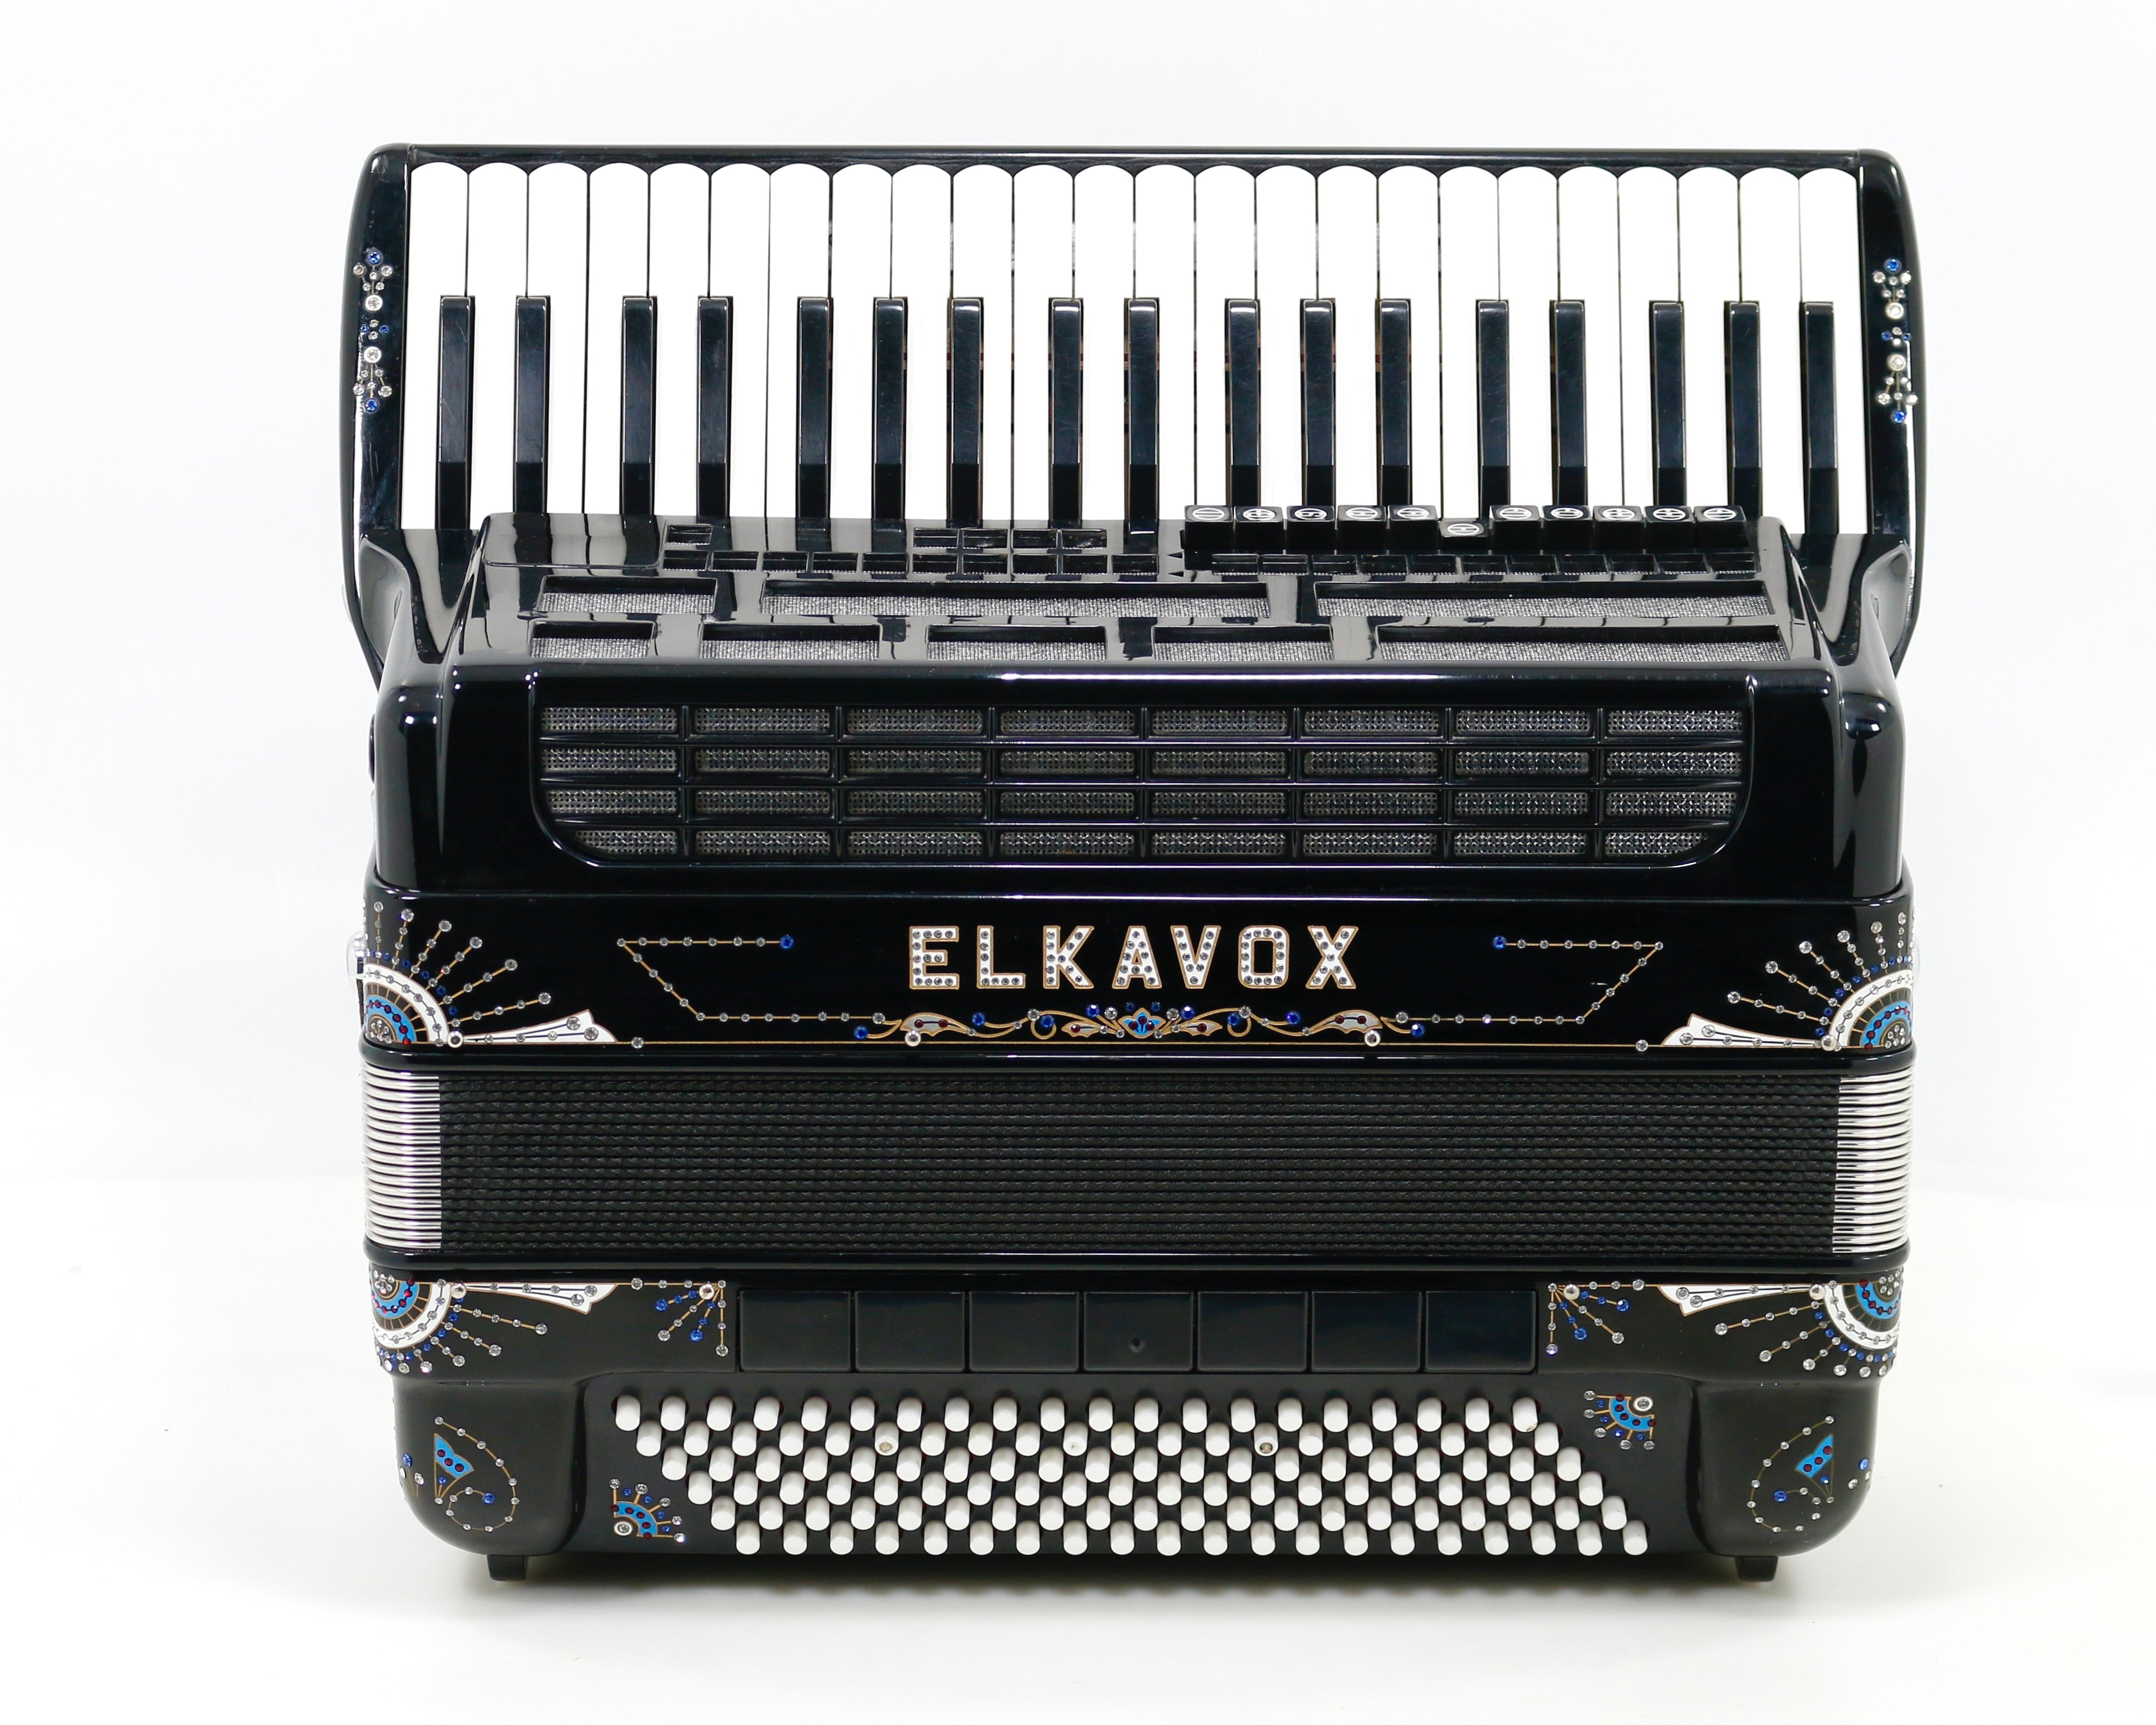 Modelo Elkavox 83 (19 1/4" LMMM Musette)